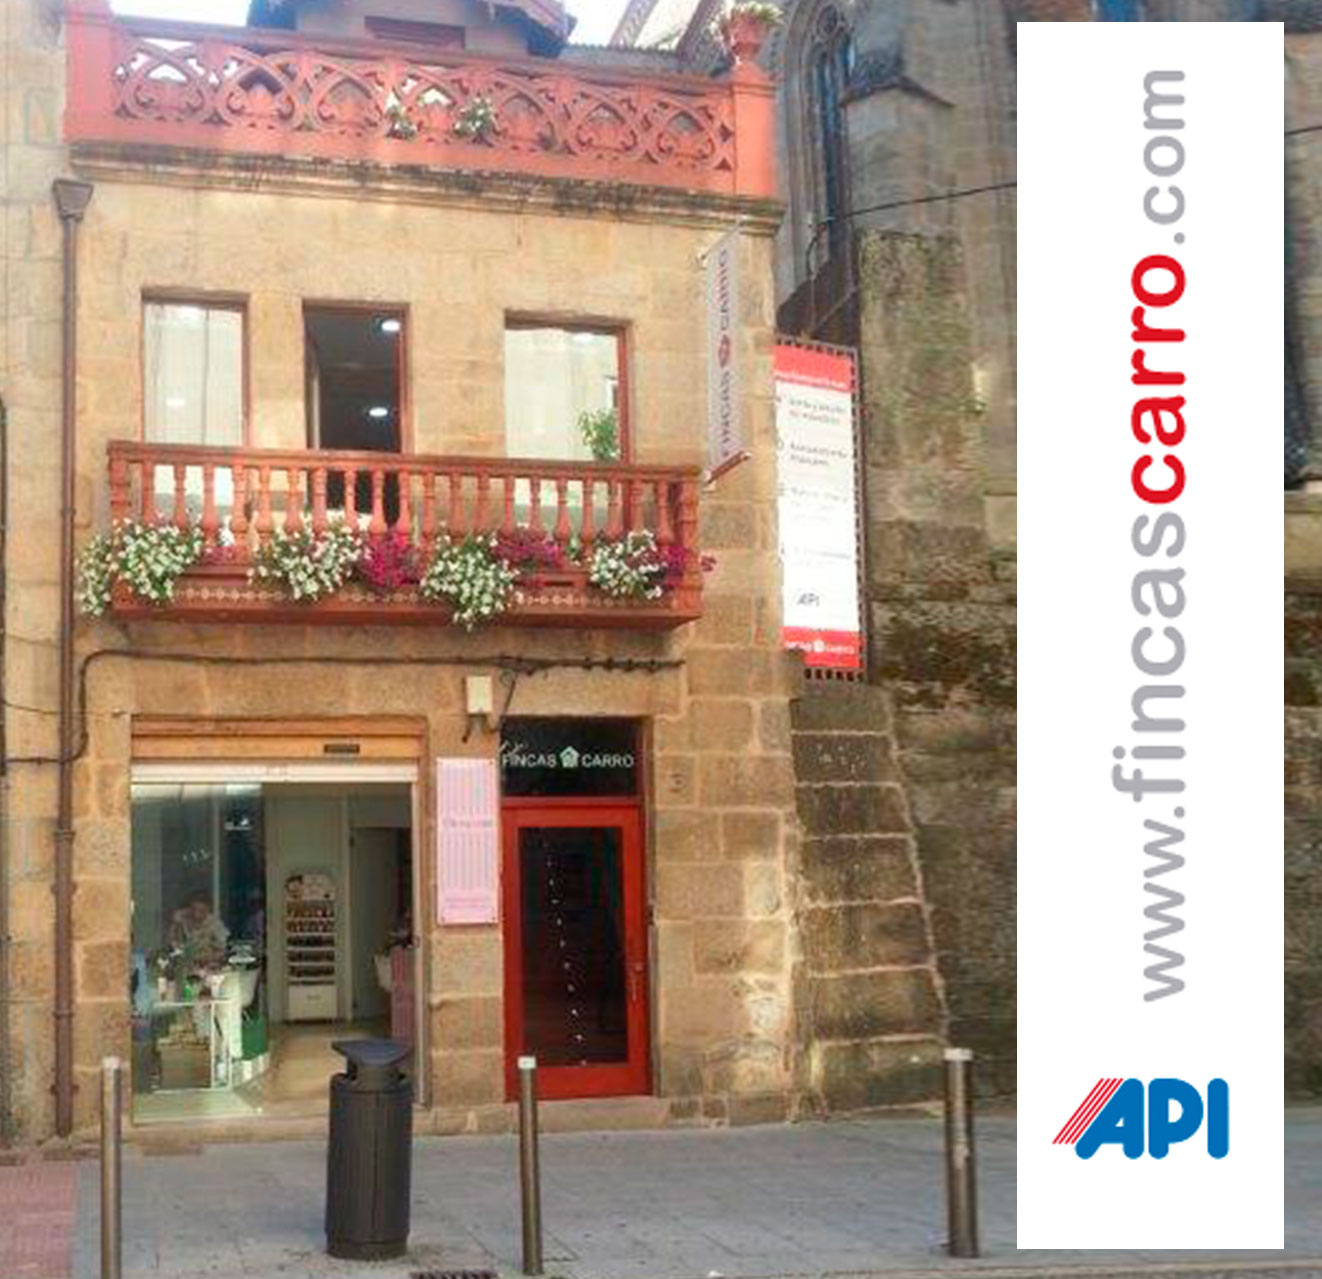 Viviendas en Pontevedra y alrededores. Fincas Carro le ofrece un servicio profesional en la gestión de inmuebles. Compra, venta y alquiler de inmuebles en Pontevedra.